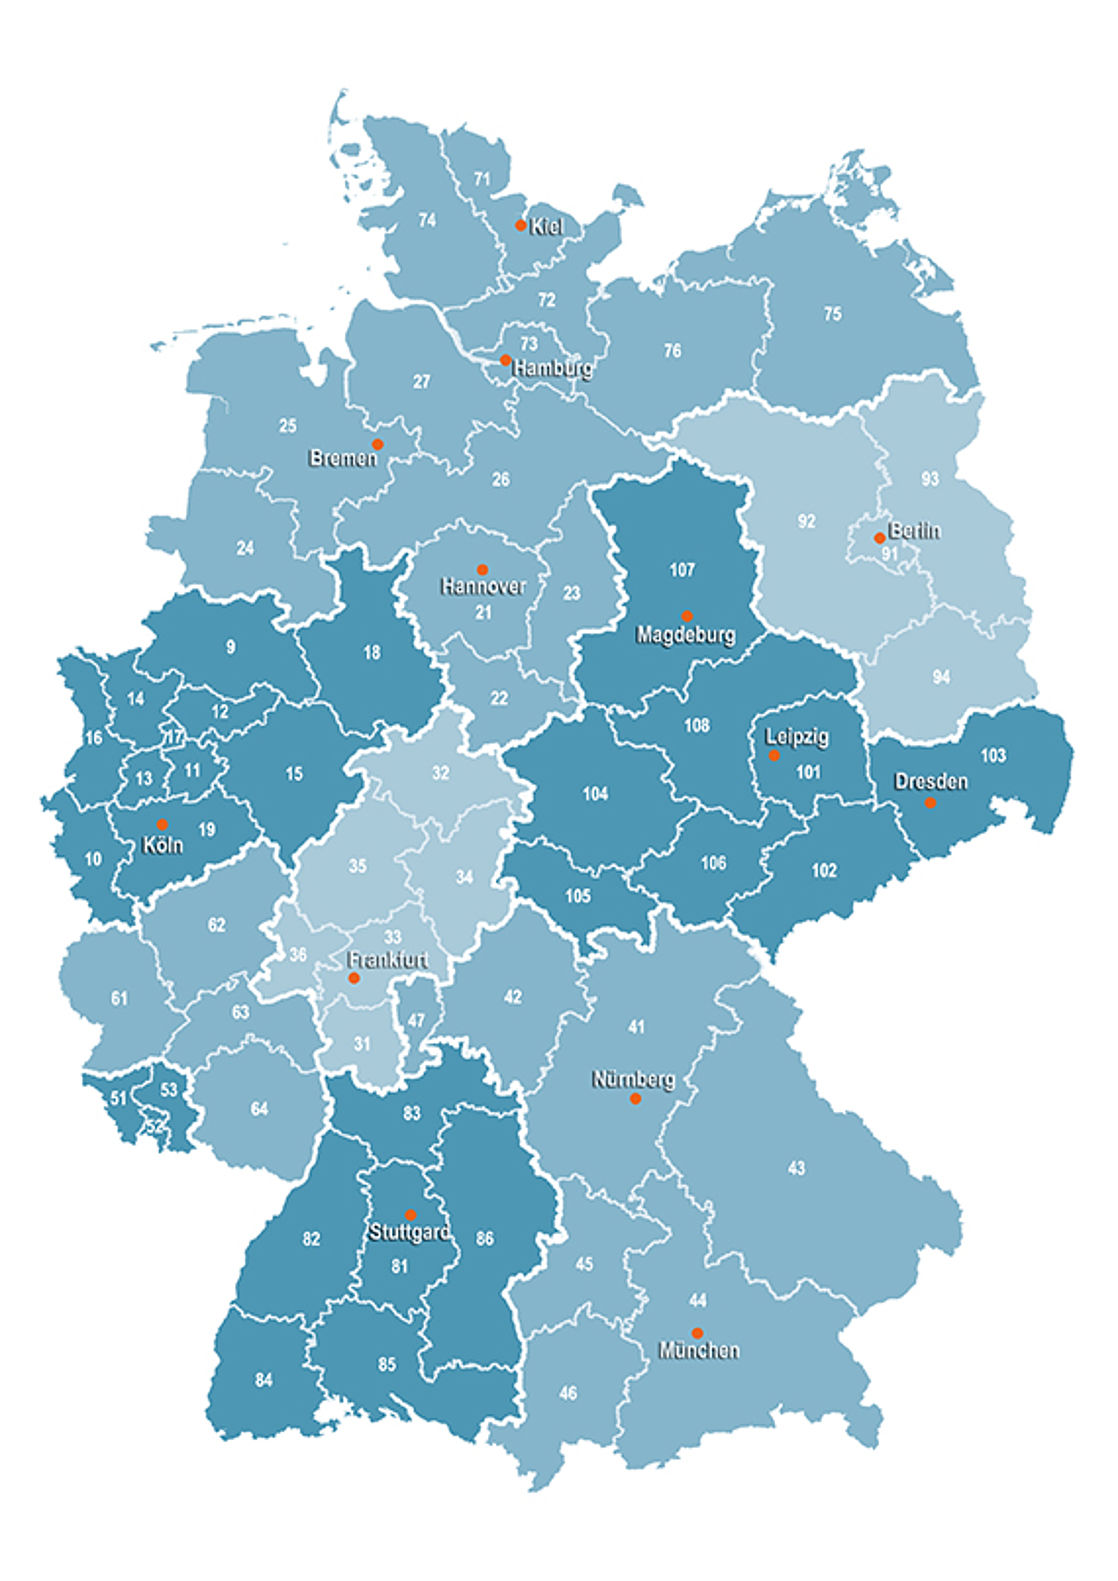 Karte der neun DVGW-Landesgruppen und der 62 DVGW-Bezirksgruppen.